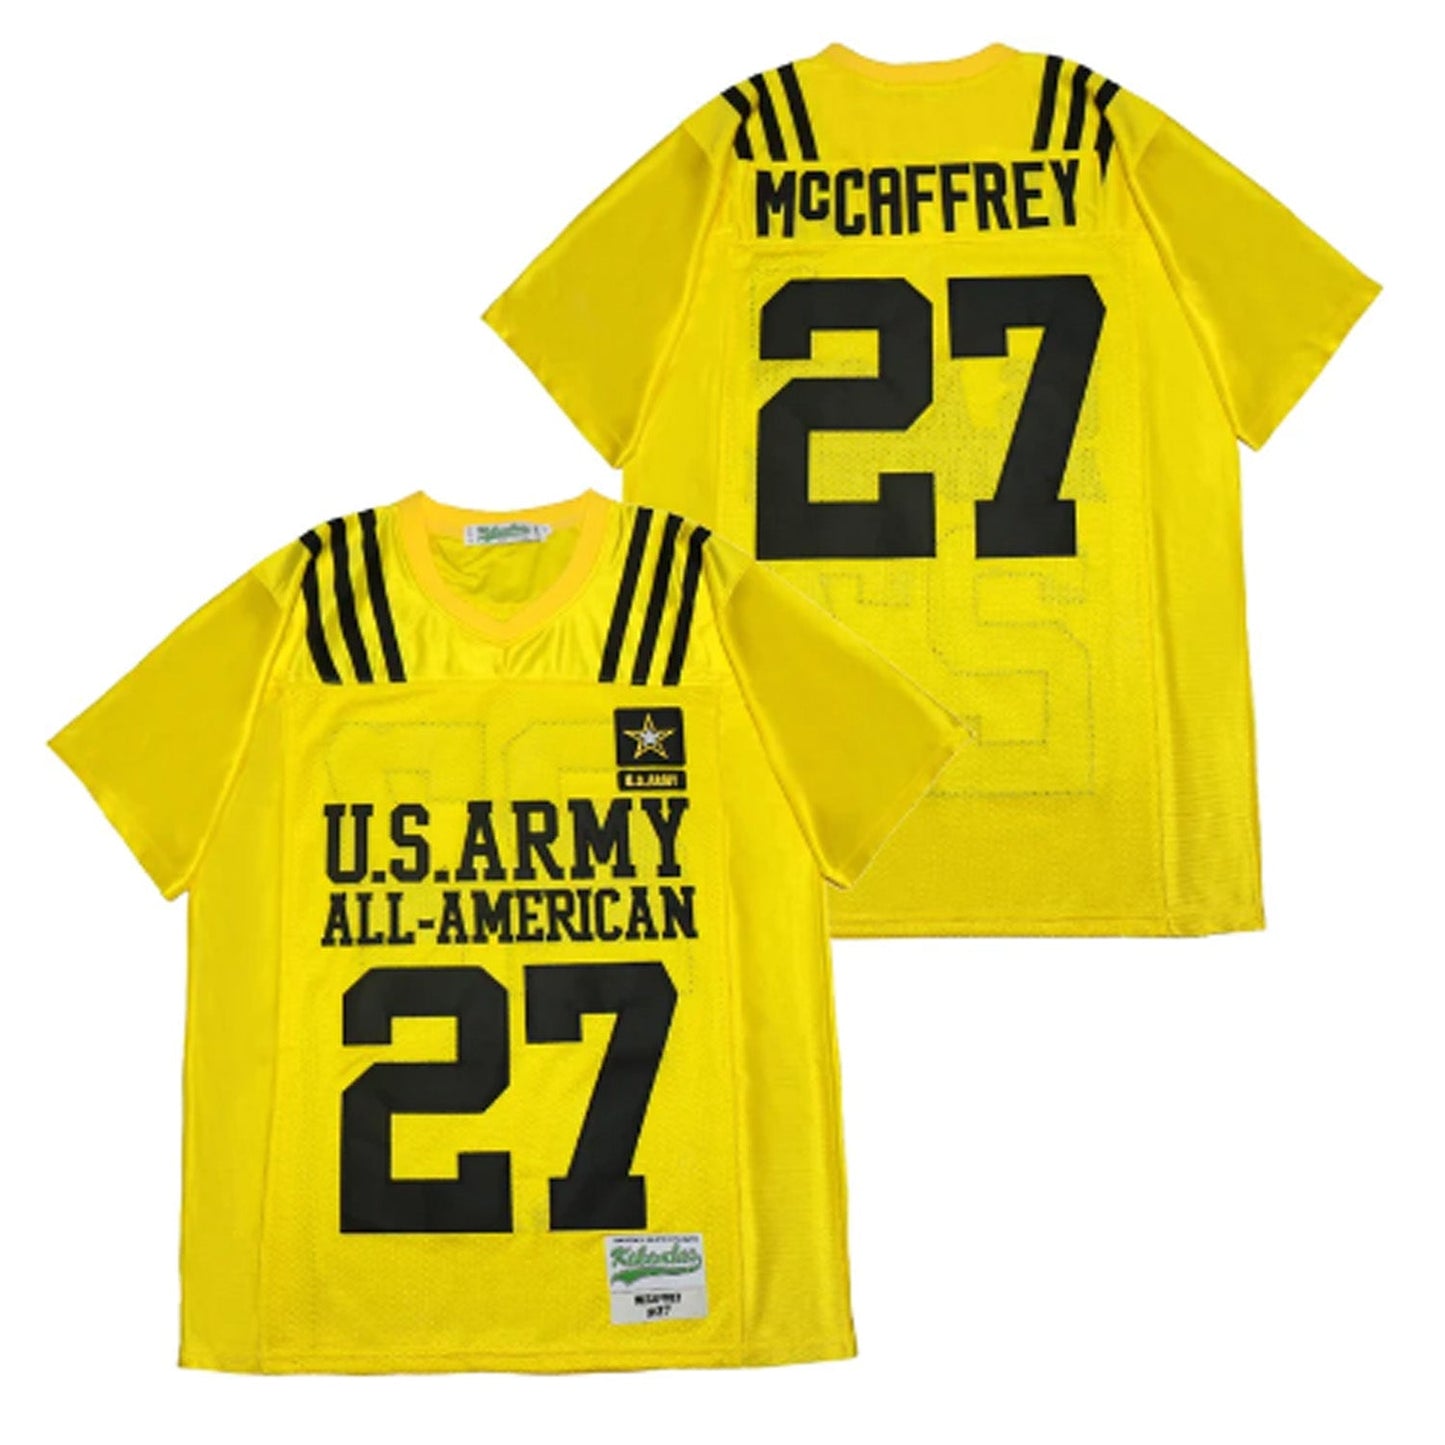 Christian McCaffrey U.S. Army All-American Football 27 Jersey